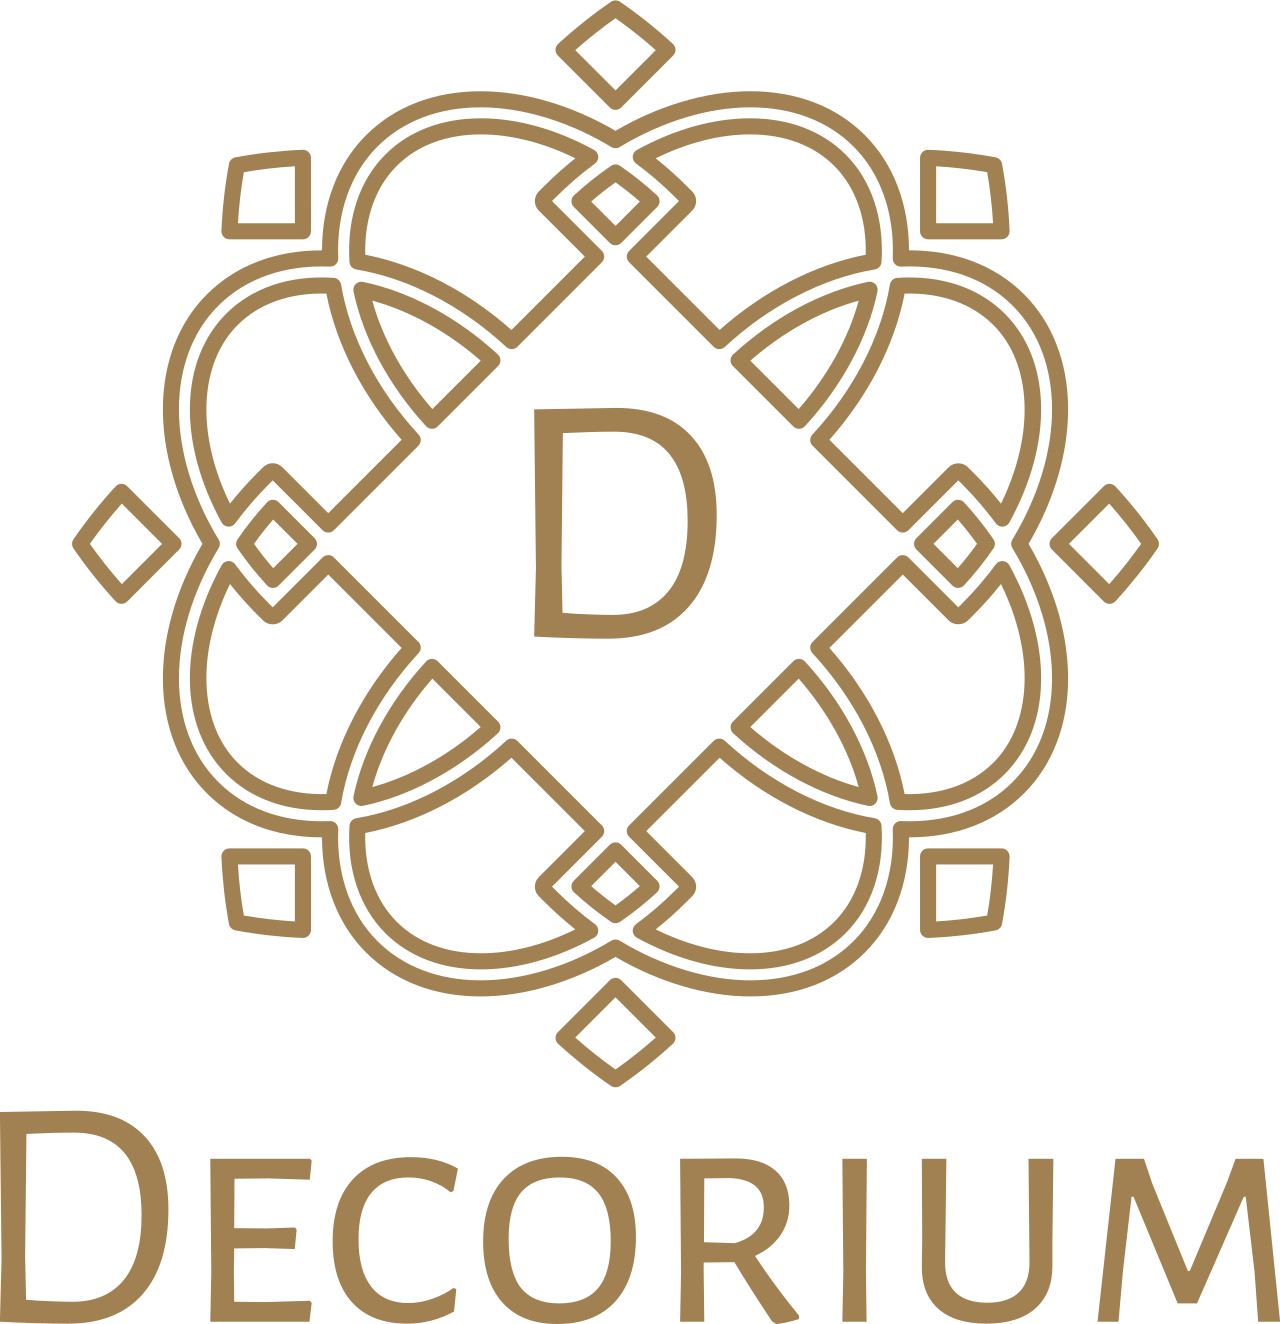 Decorium's logo